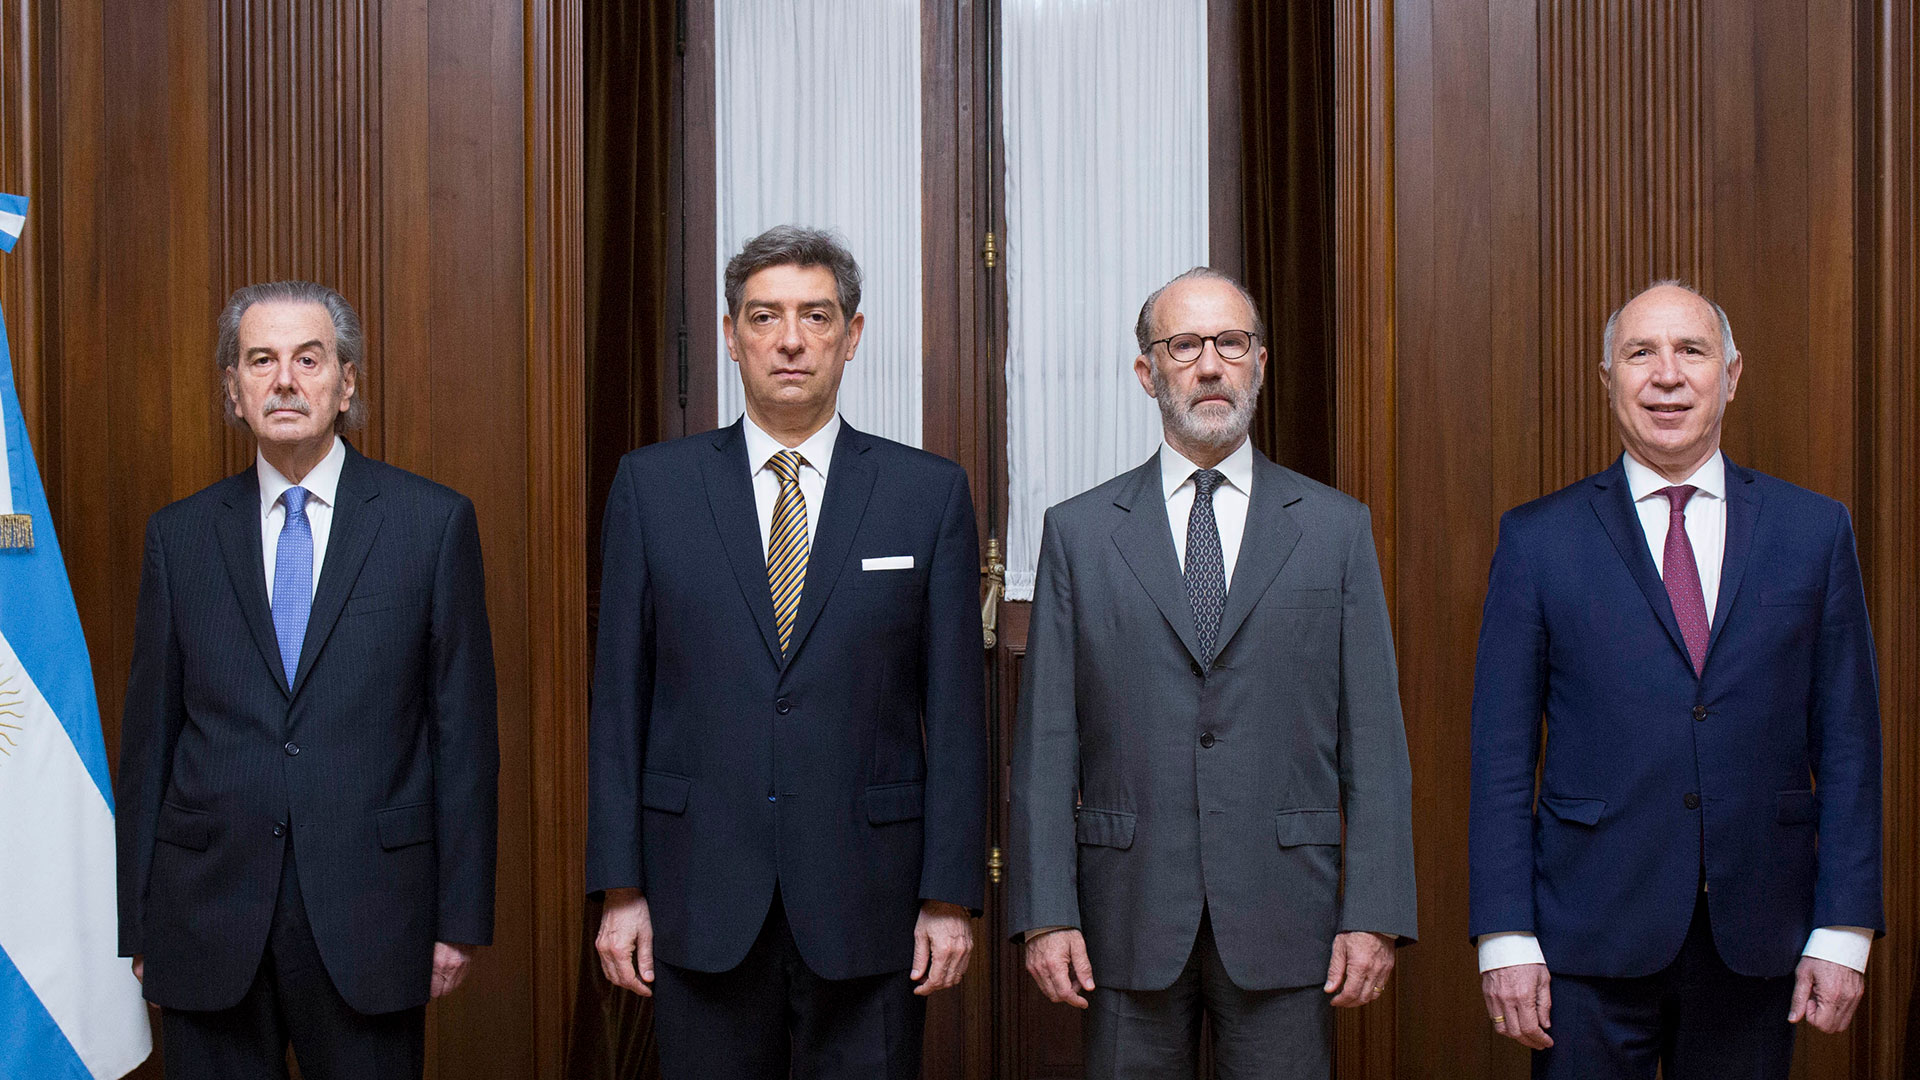 Los cuatro miembros de la Corte Suprema actual